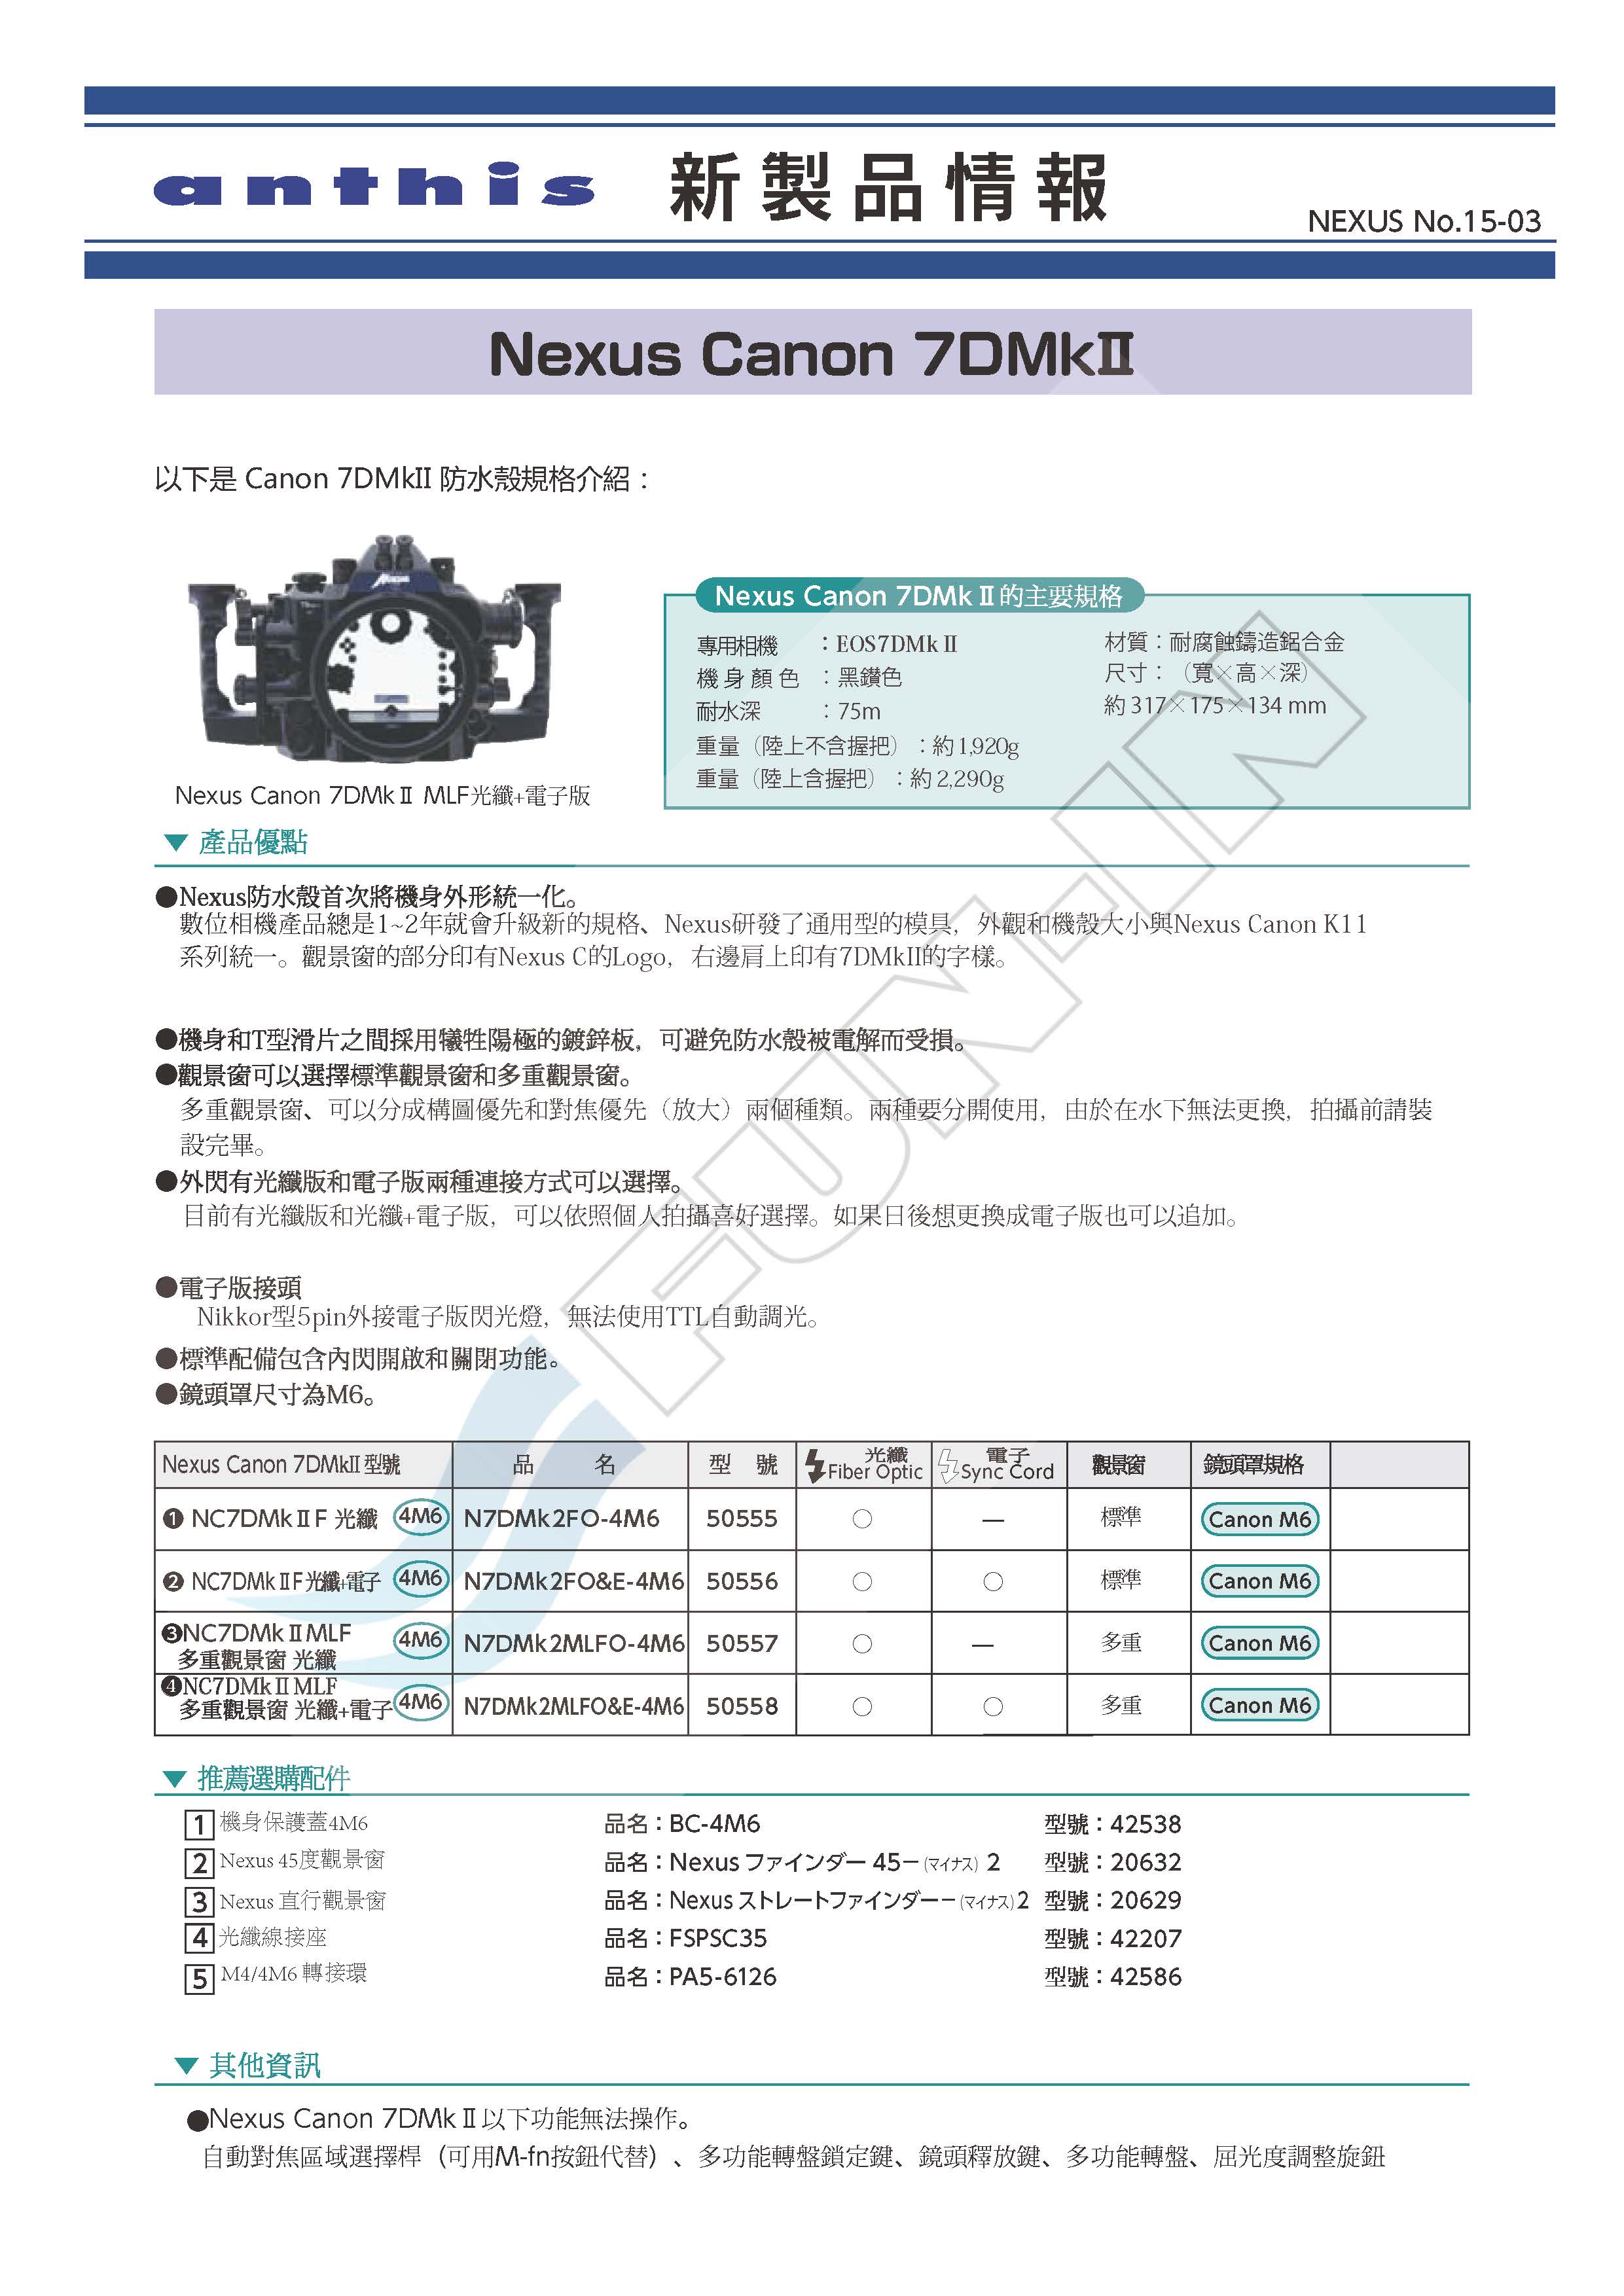 Nikon d90 user guide pdf